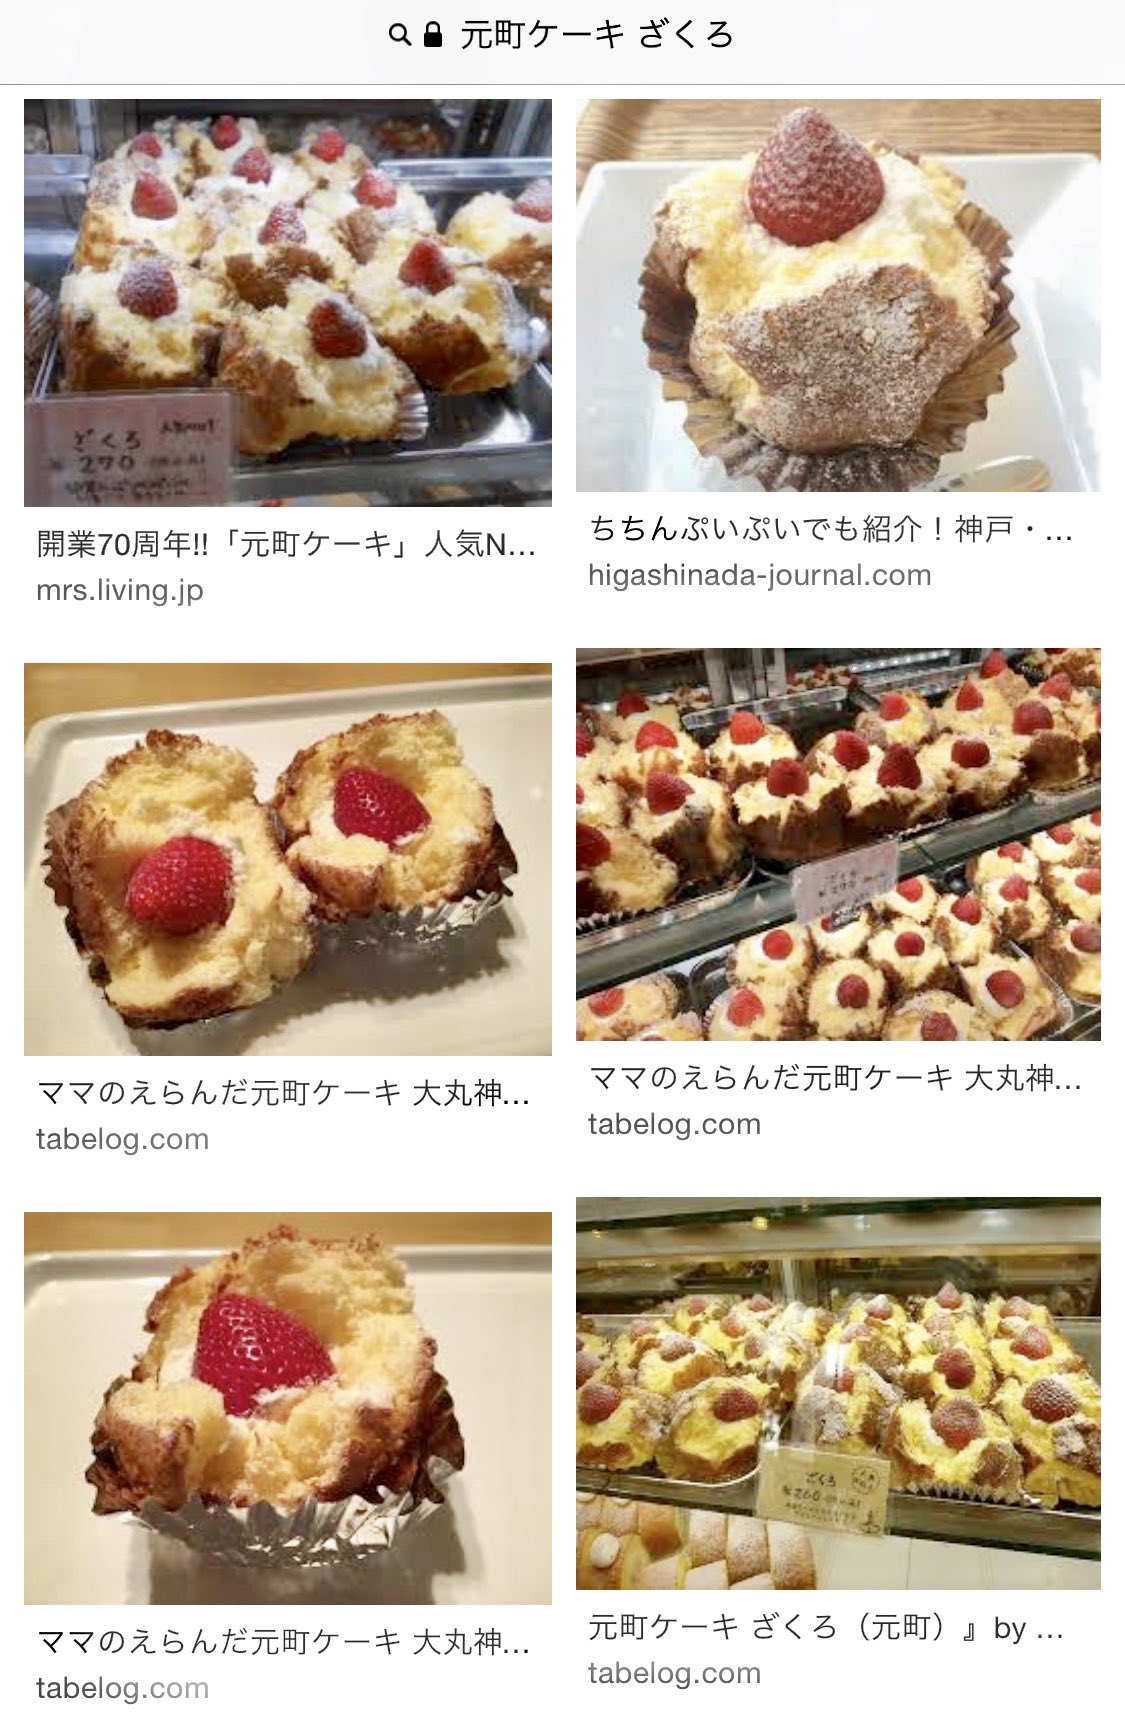 Kanoco 神戸に住んでた時に大好きだった 元町ケーキの ざくろ が食べたい なぜか急に思い出した